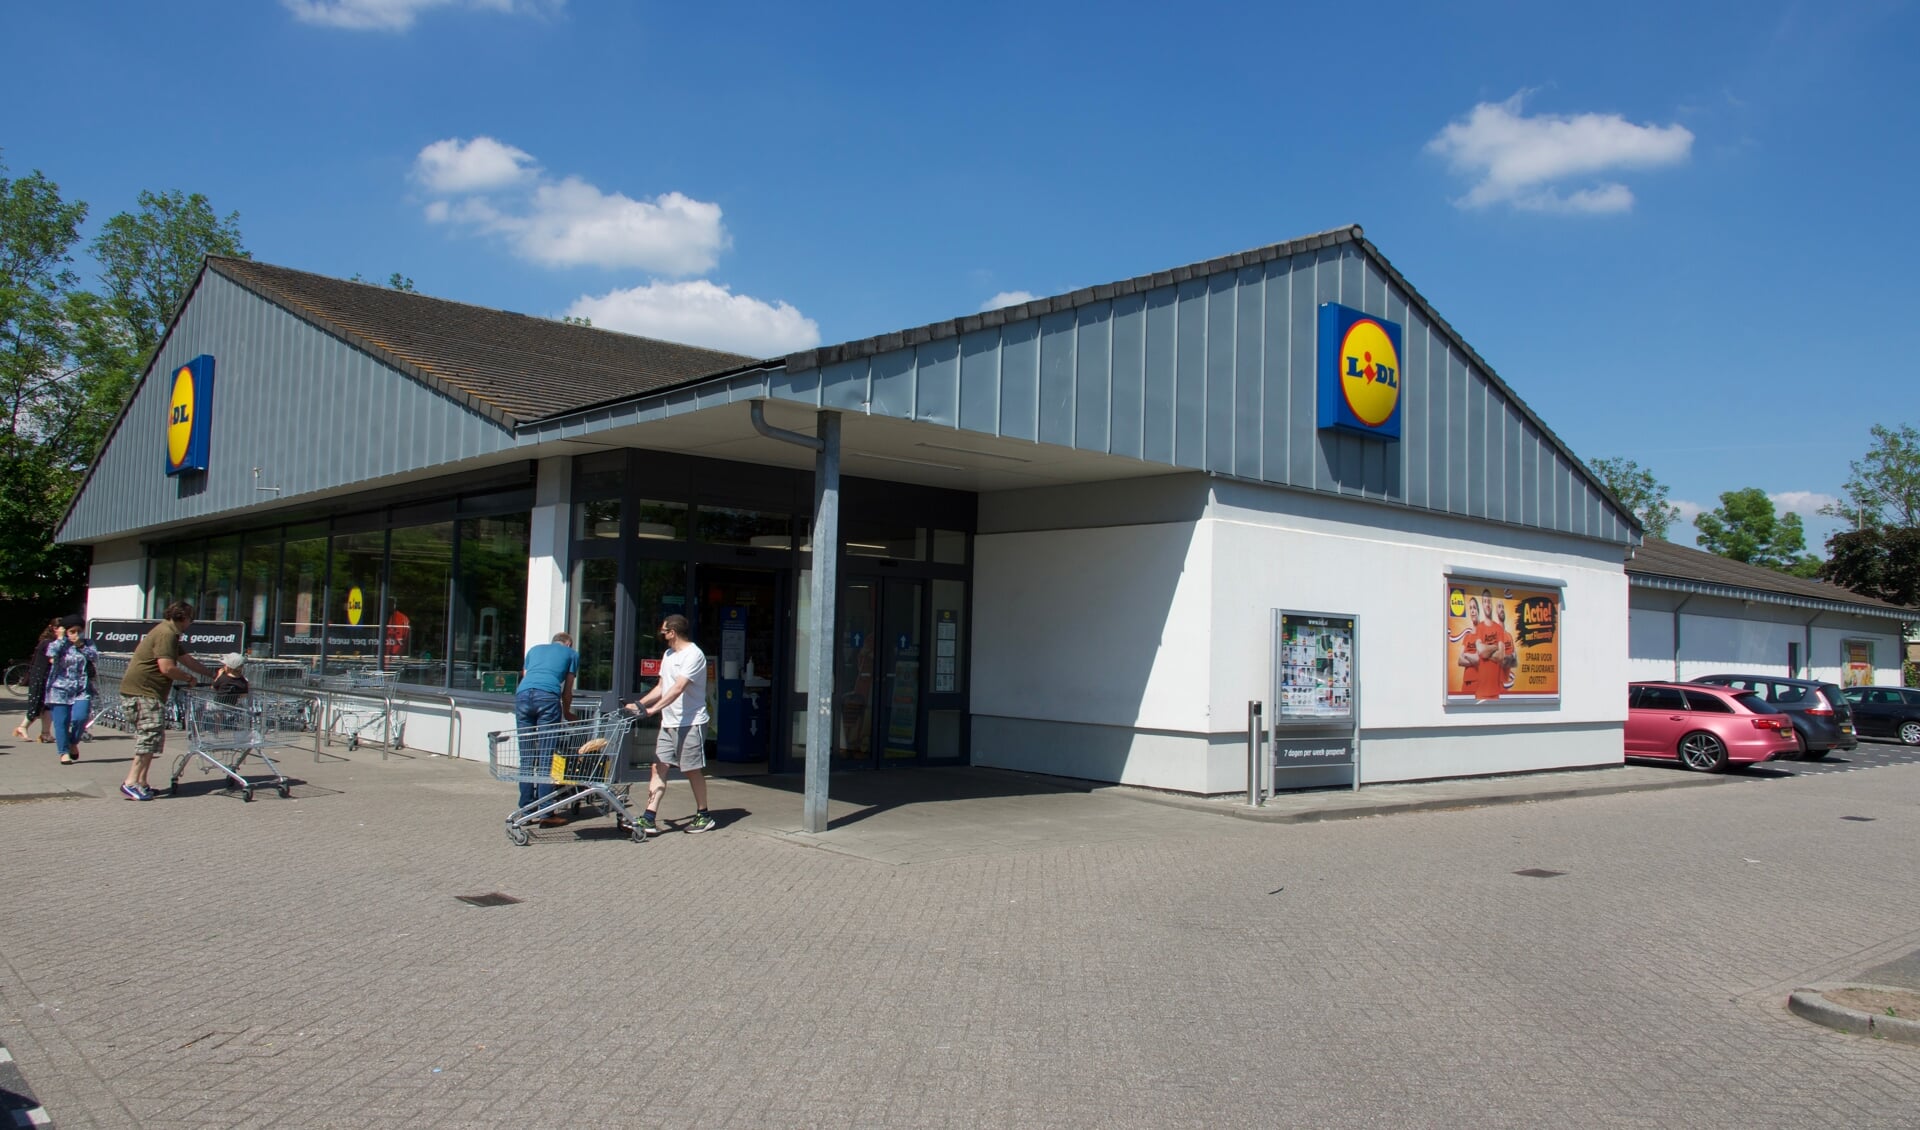 De Lidl is een grote supermarkt in de Grauwe Polder. 